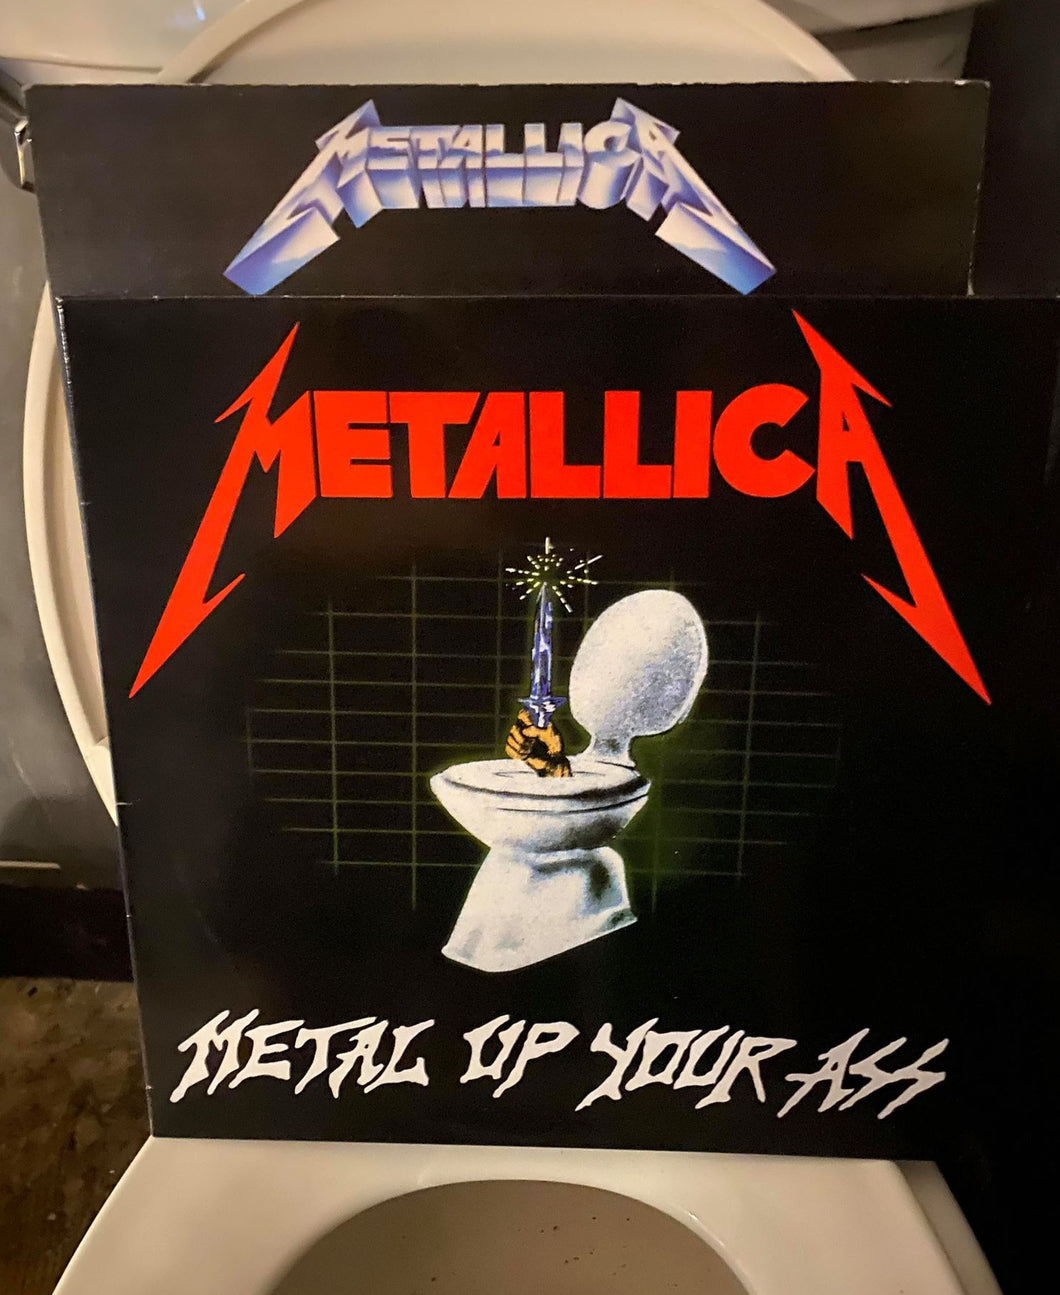 Metallica - Metal Up Your Ass!